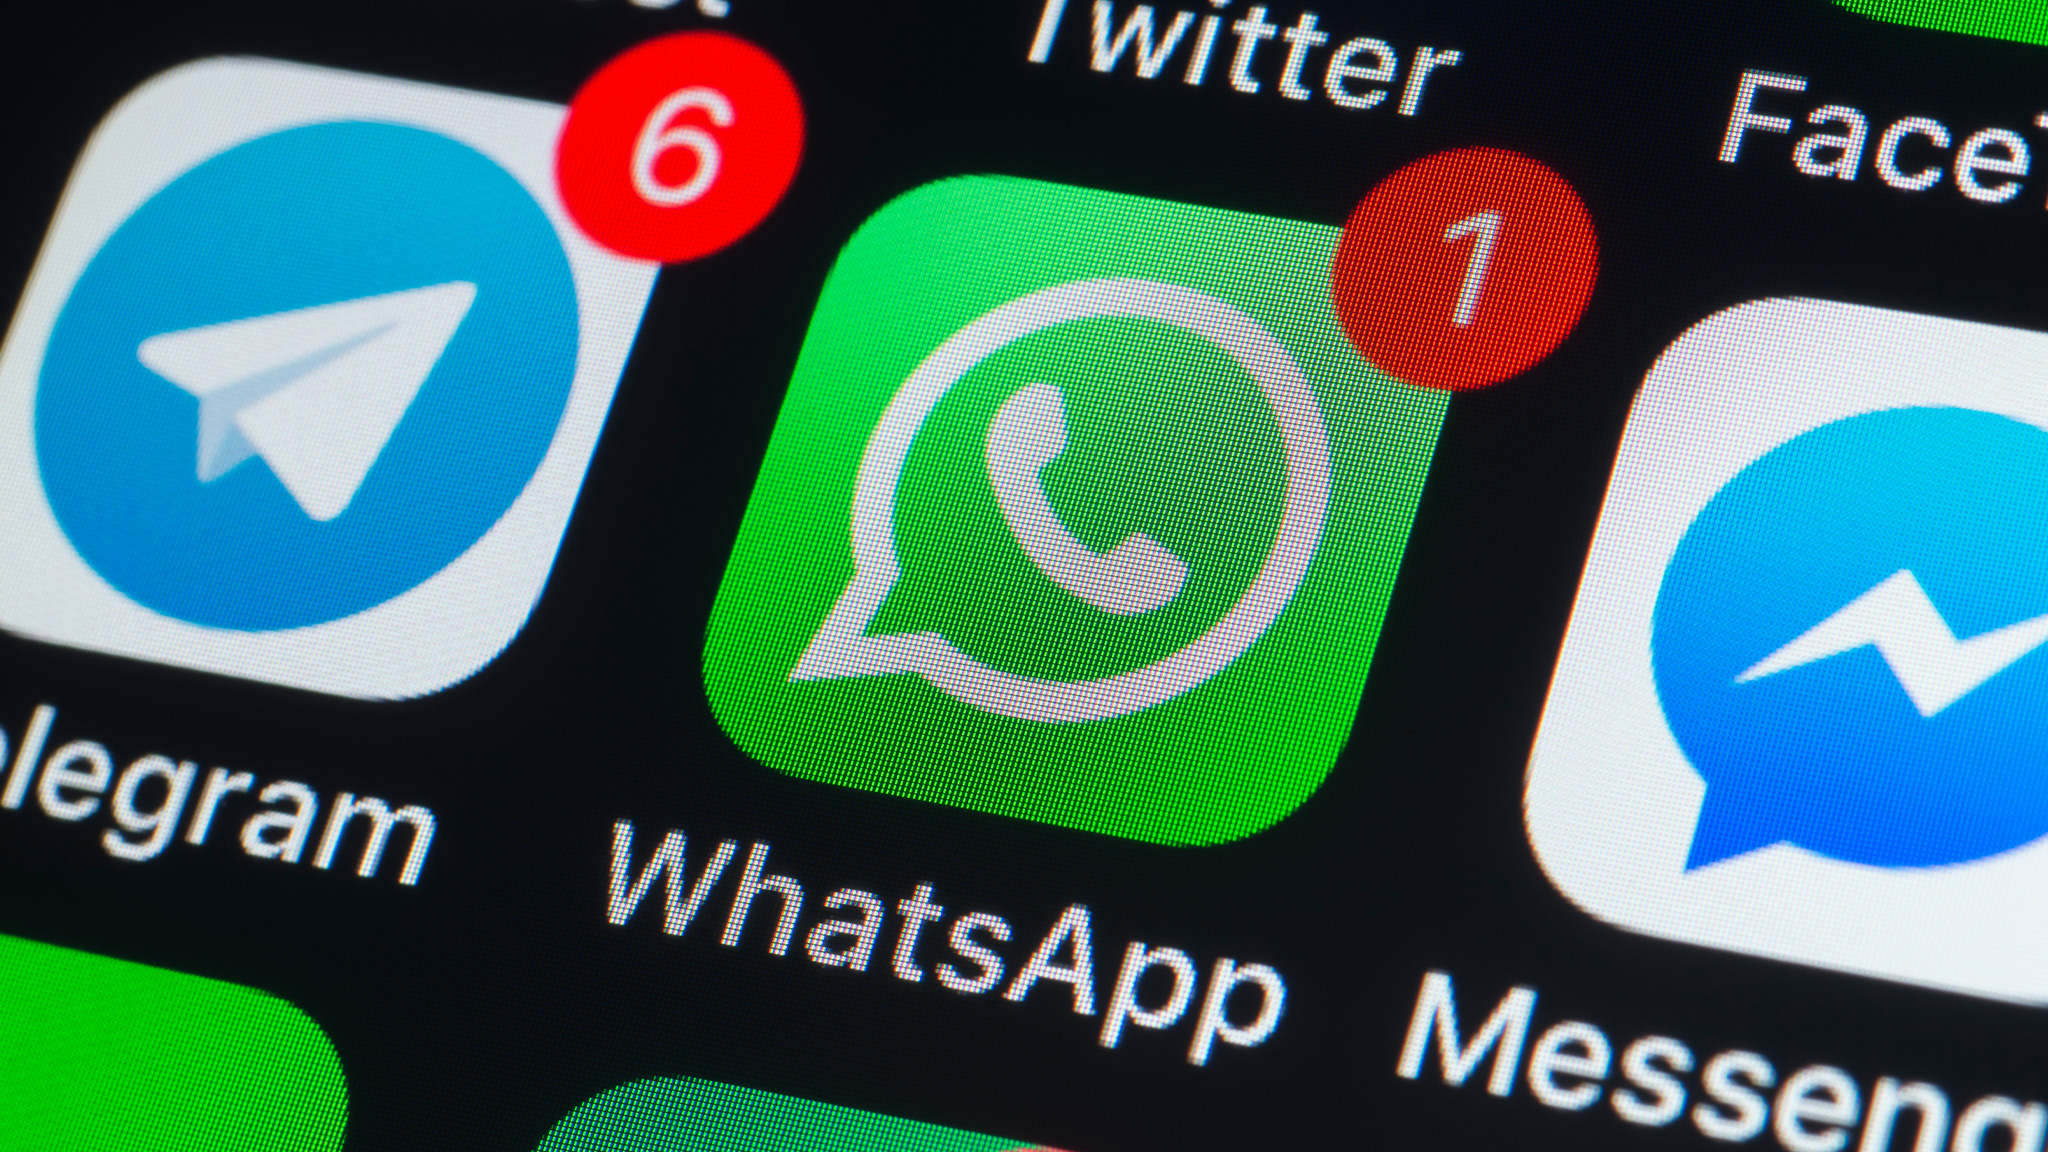 WhatsApp: Hier sind Screenshots bald verboten